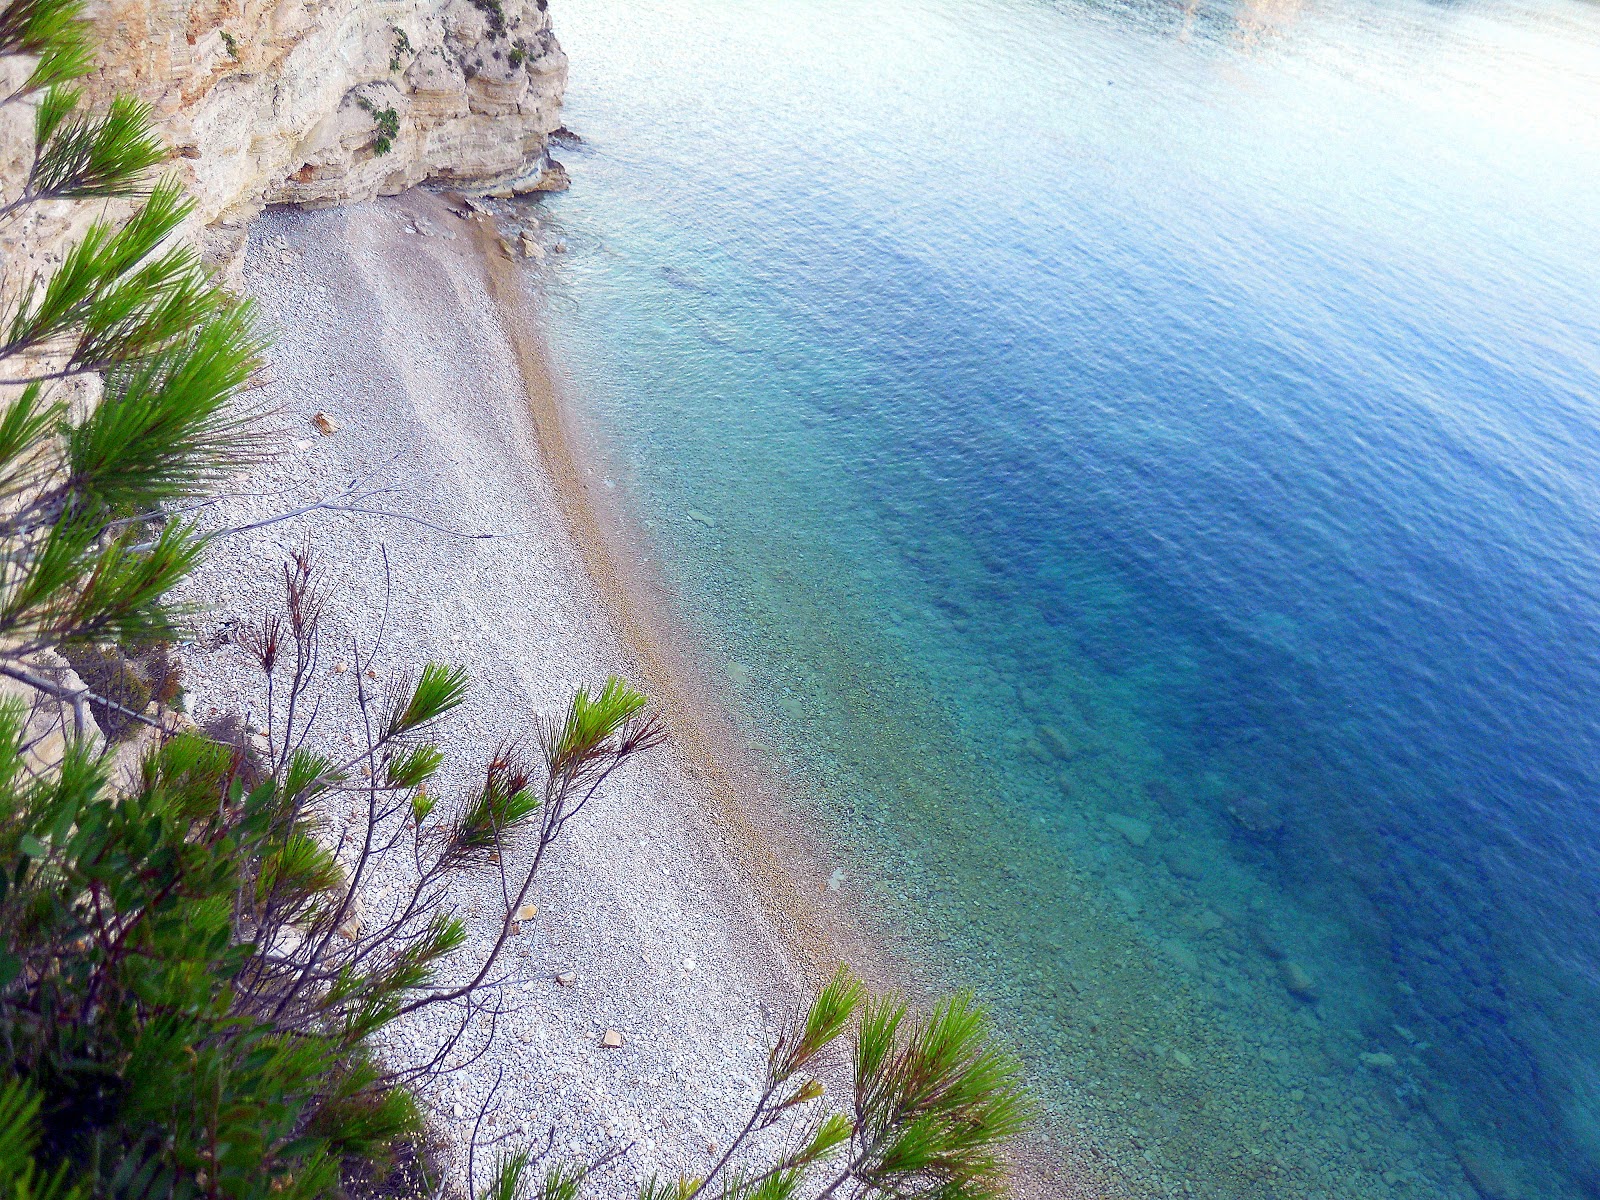 Zdjęcie Lenna's beach z powierzchnią turkusowa czysta woda